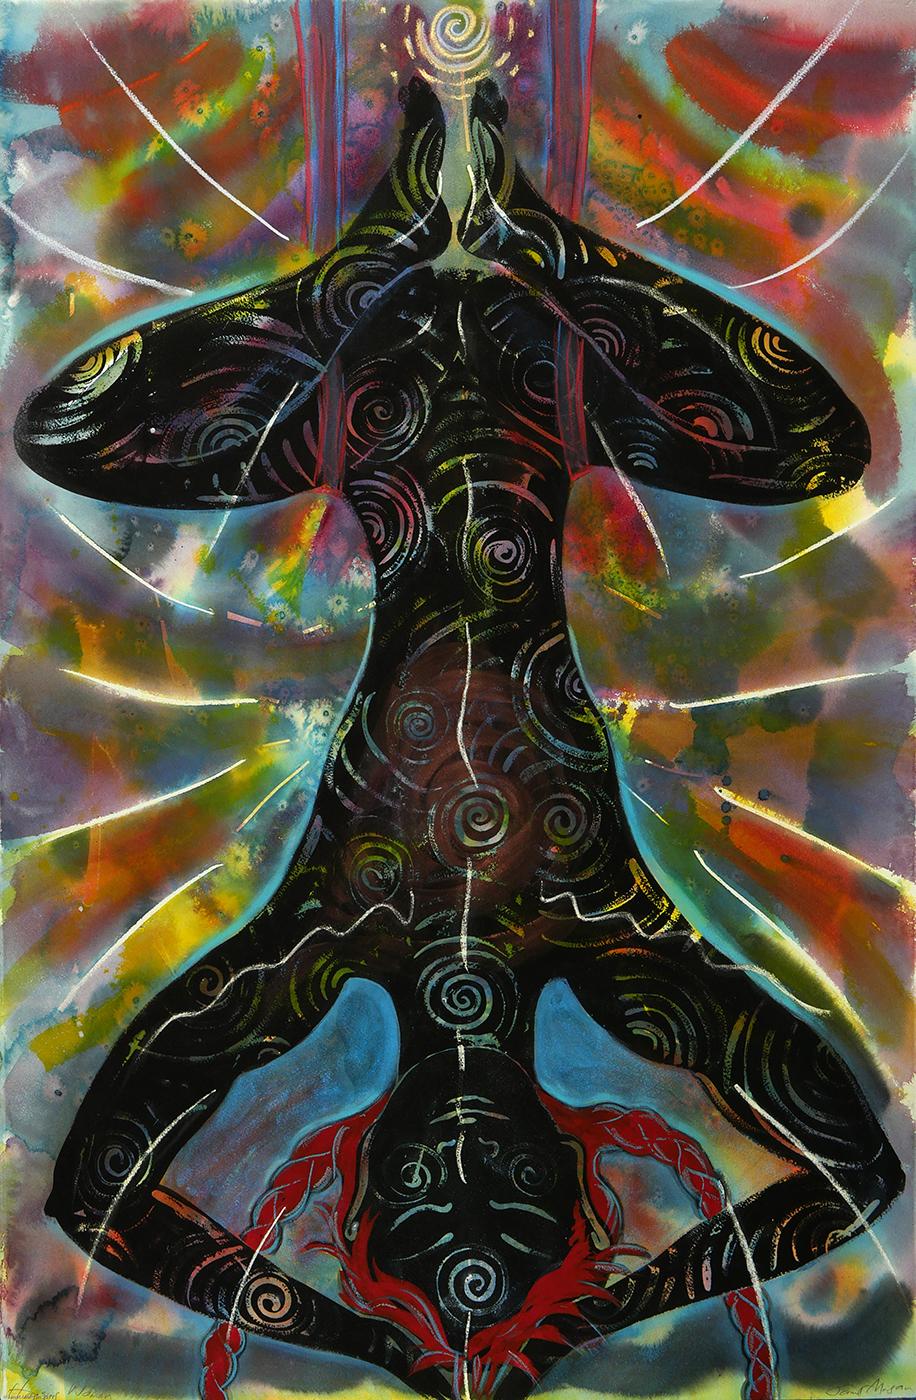 Femme suspendue, colorée, référence yoga, figure avec motifs abstraits